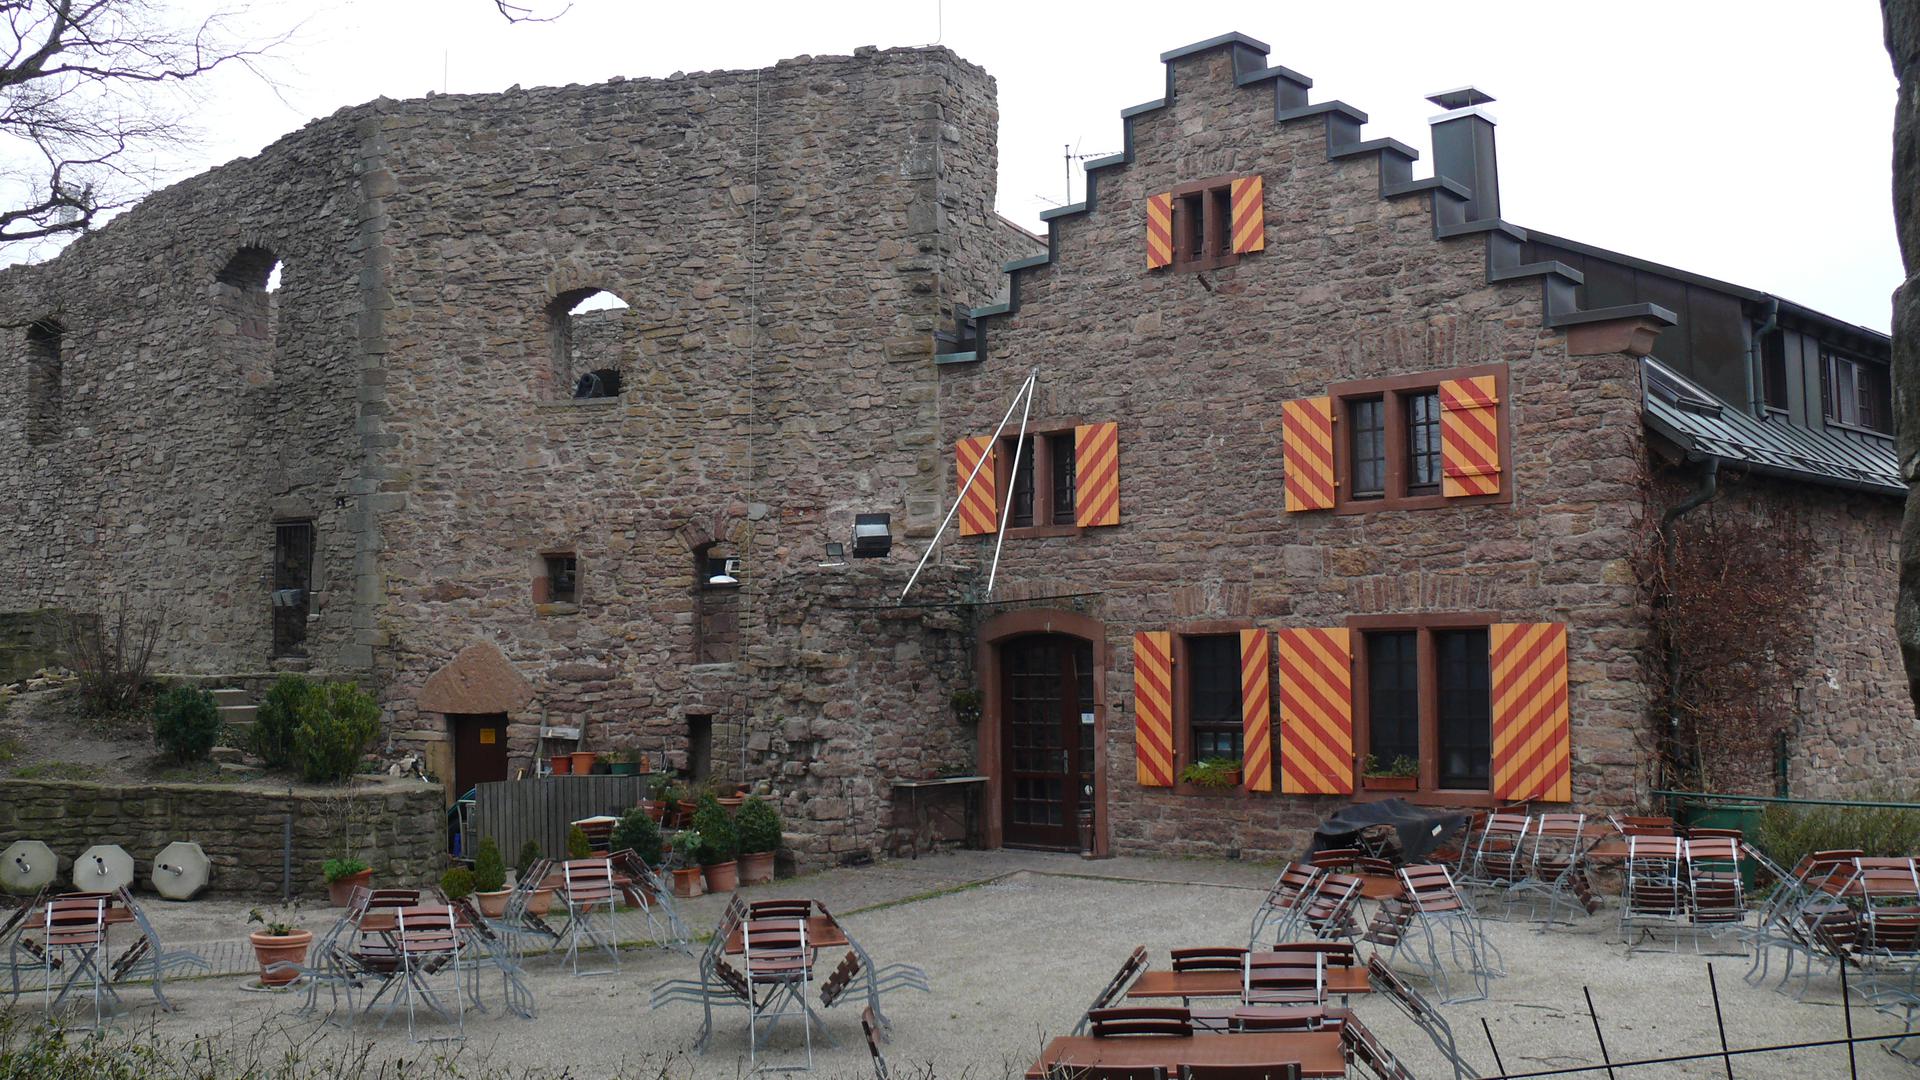 Gäste Fehlanzeige, die Burgruine ist nicht zugänglich: Alt-Eberstein ist seit Monaten geschlossen.